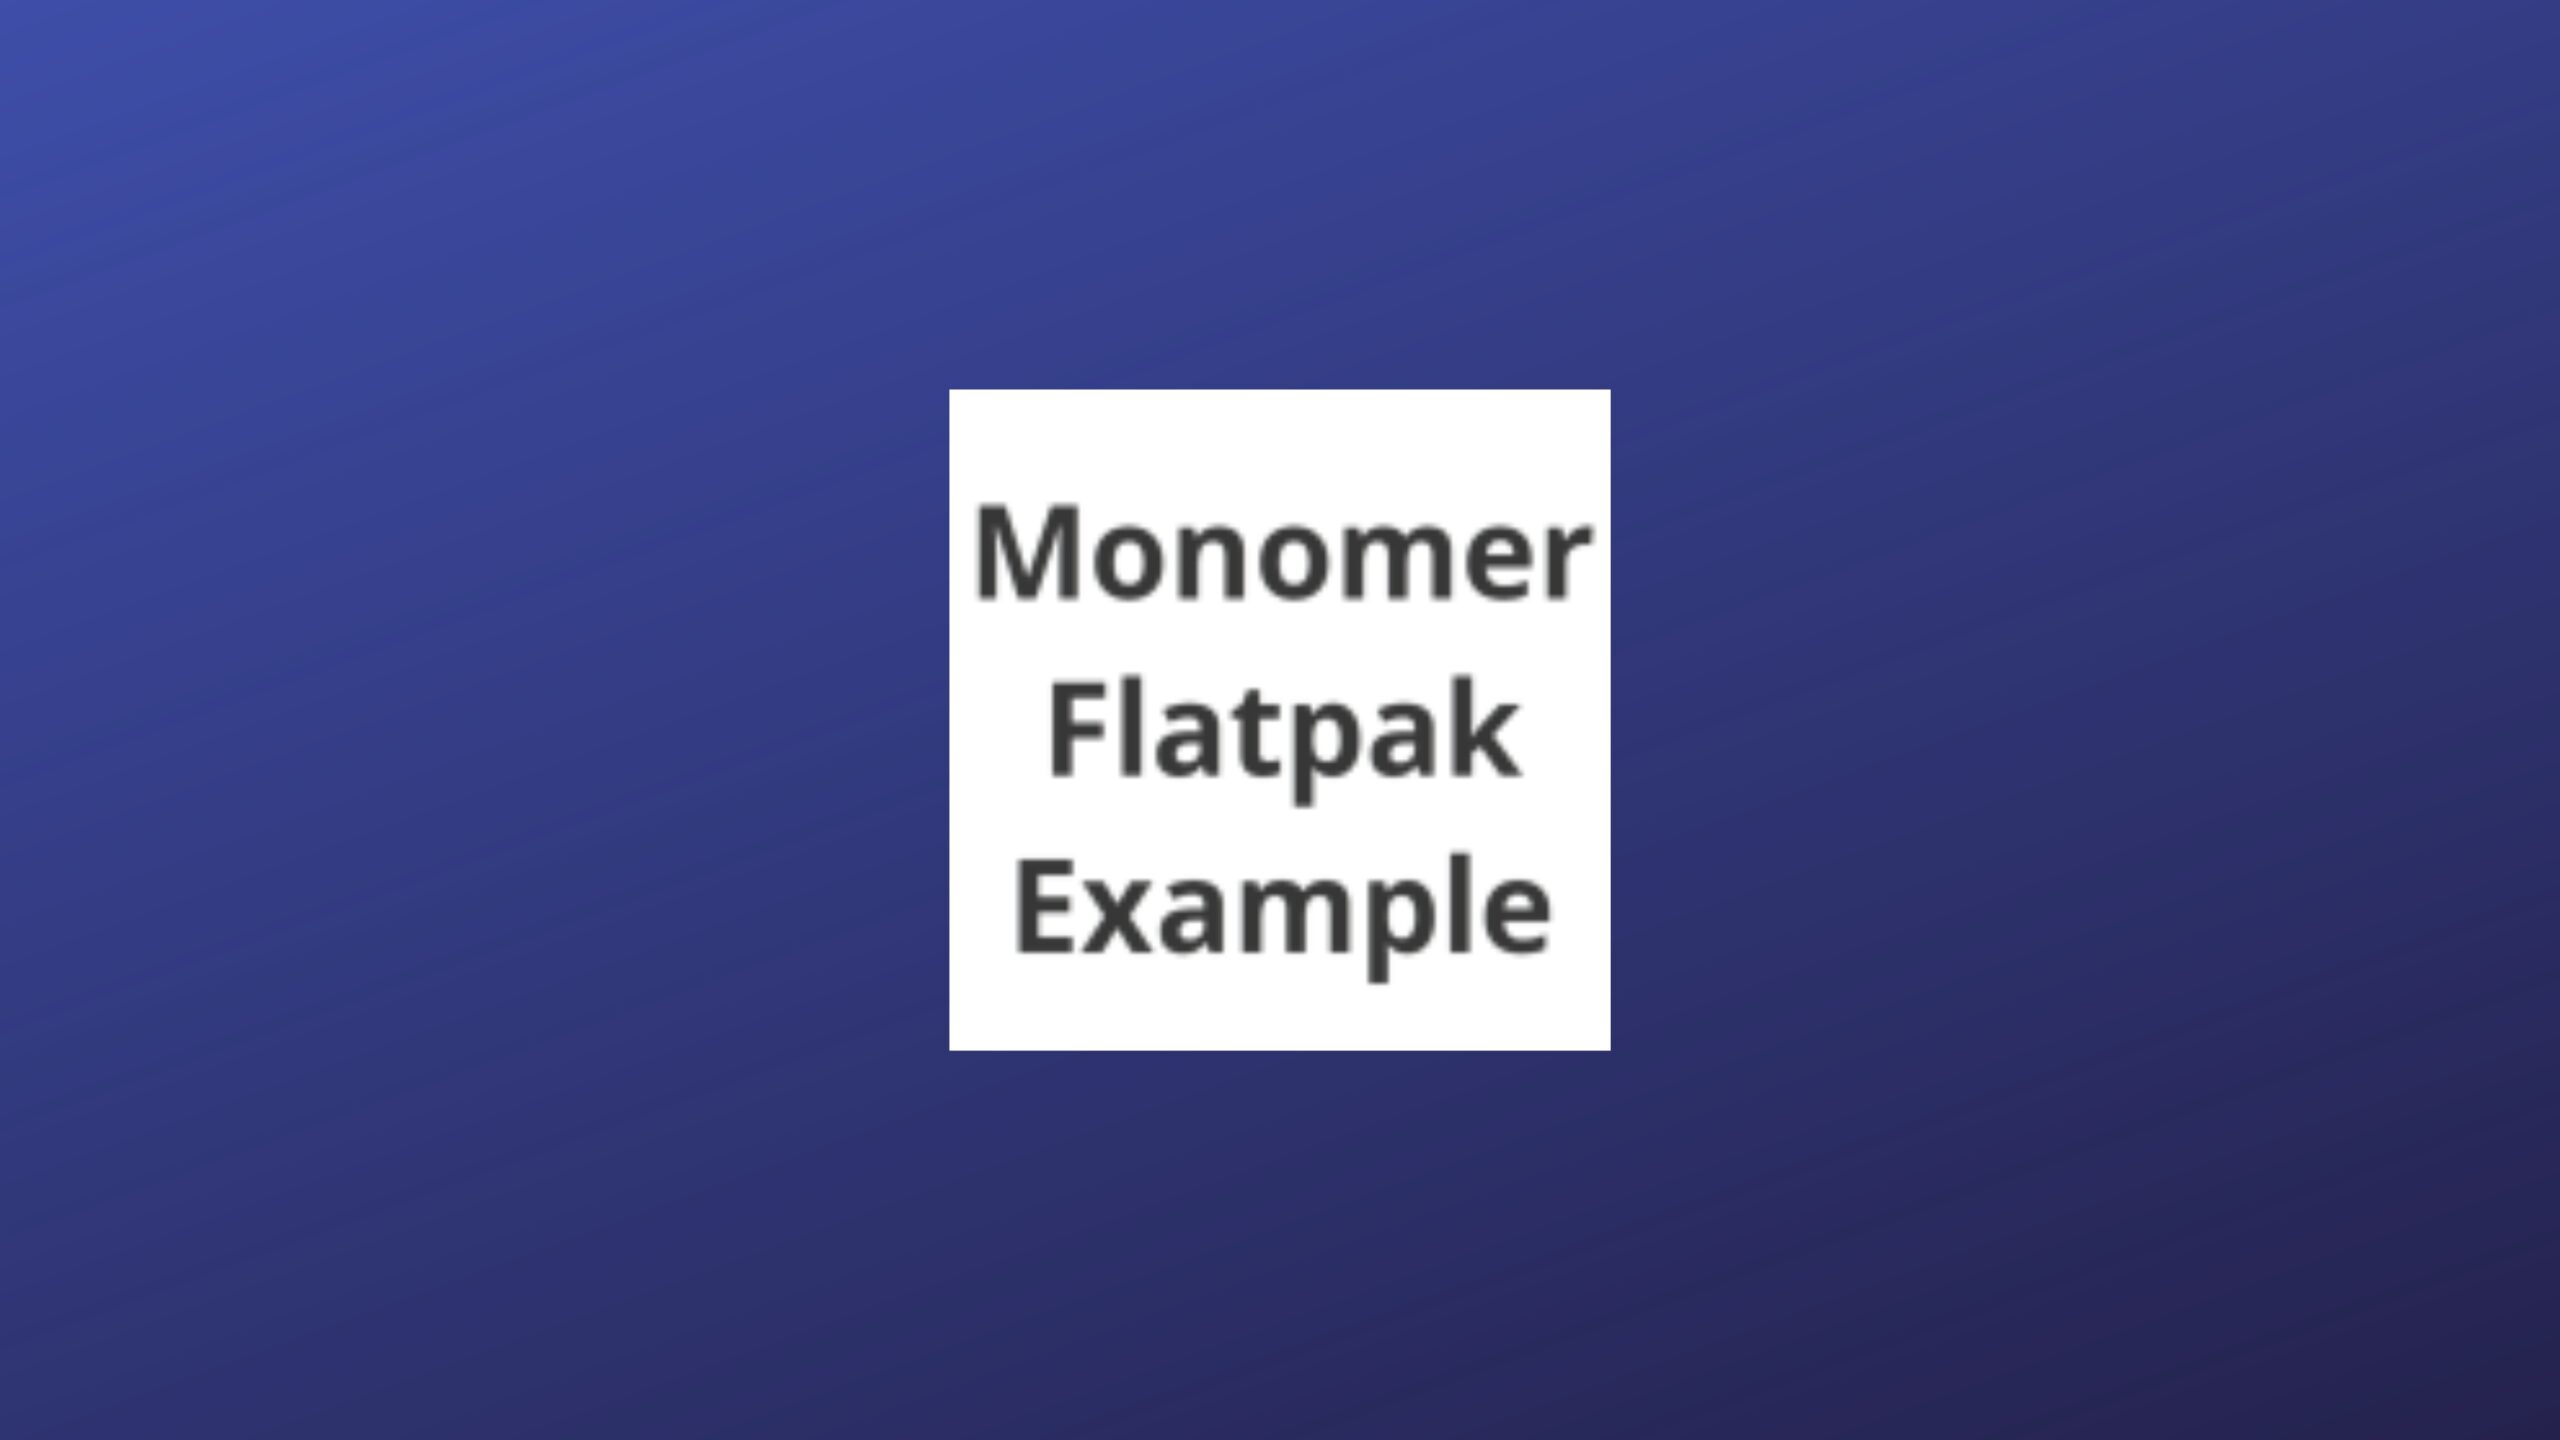 como-instalar-o-monomer-flatpak-example-no-linux